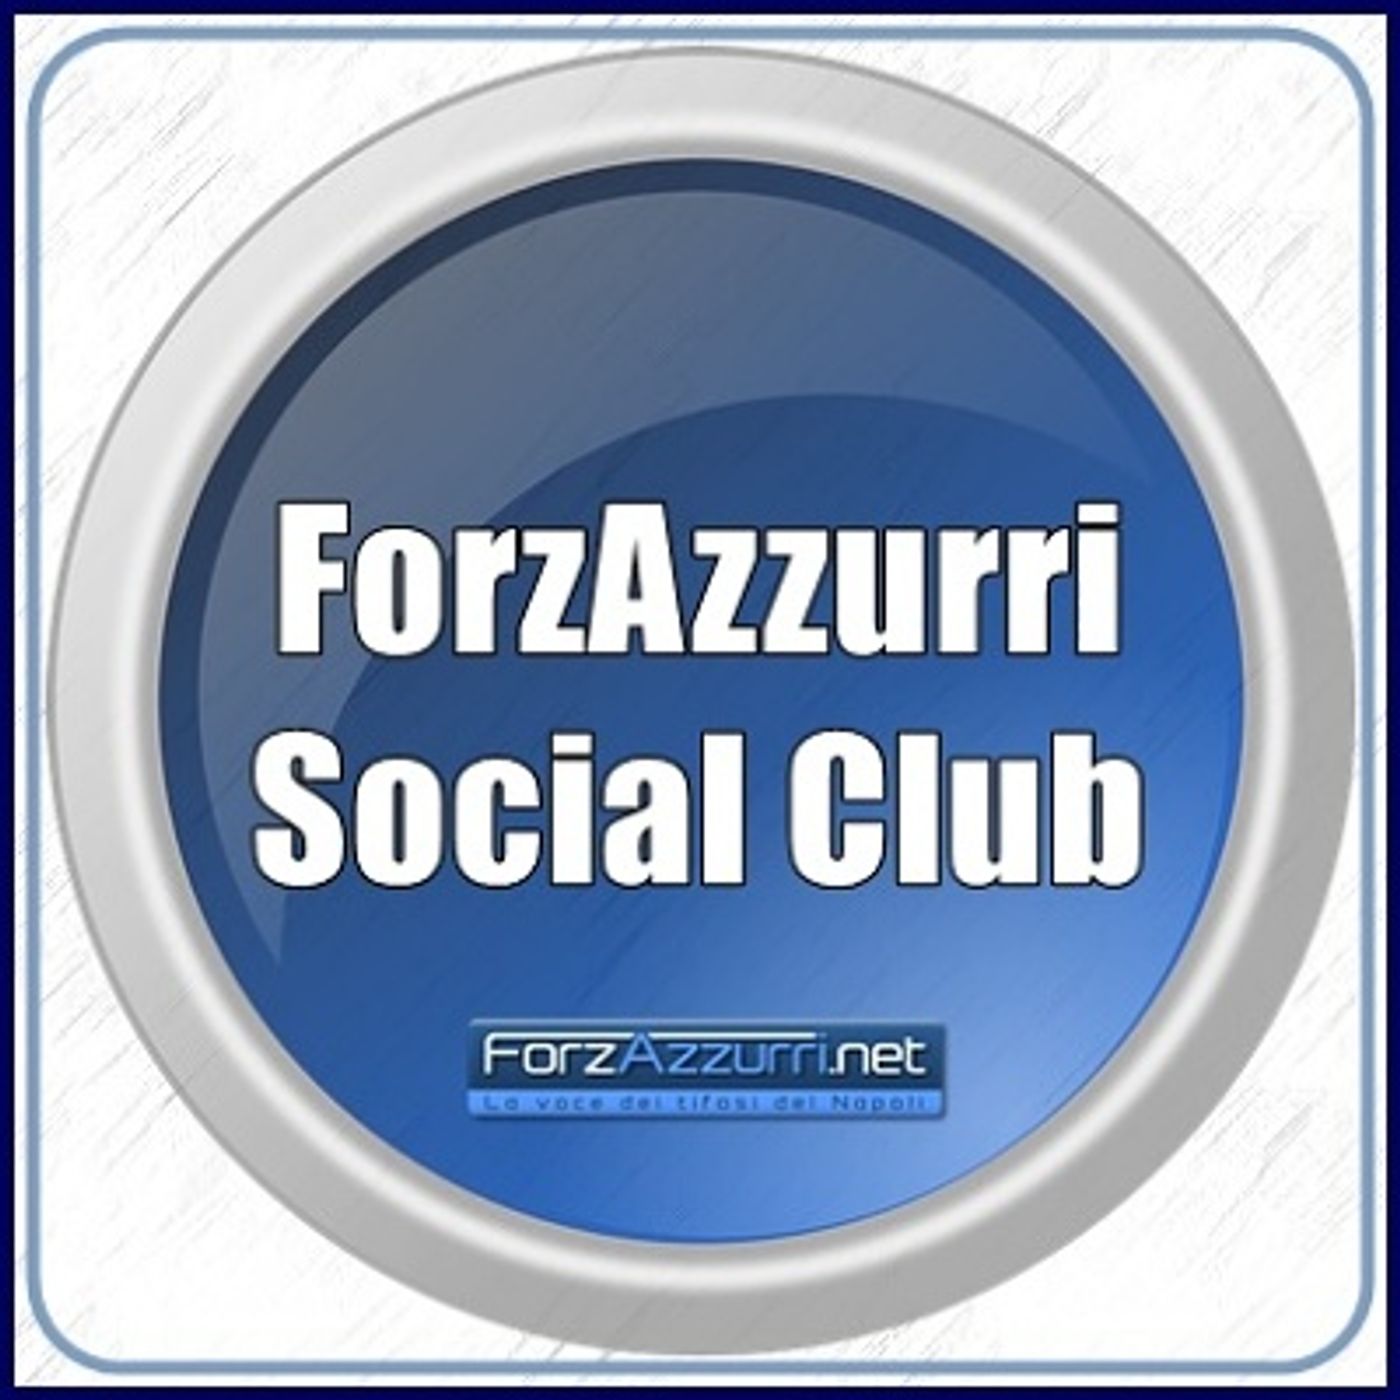 ForzAzzurri Social Club